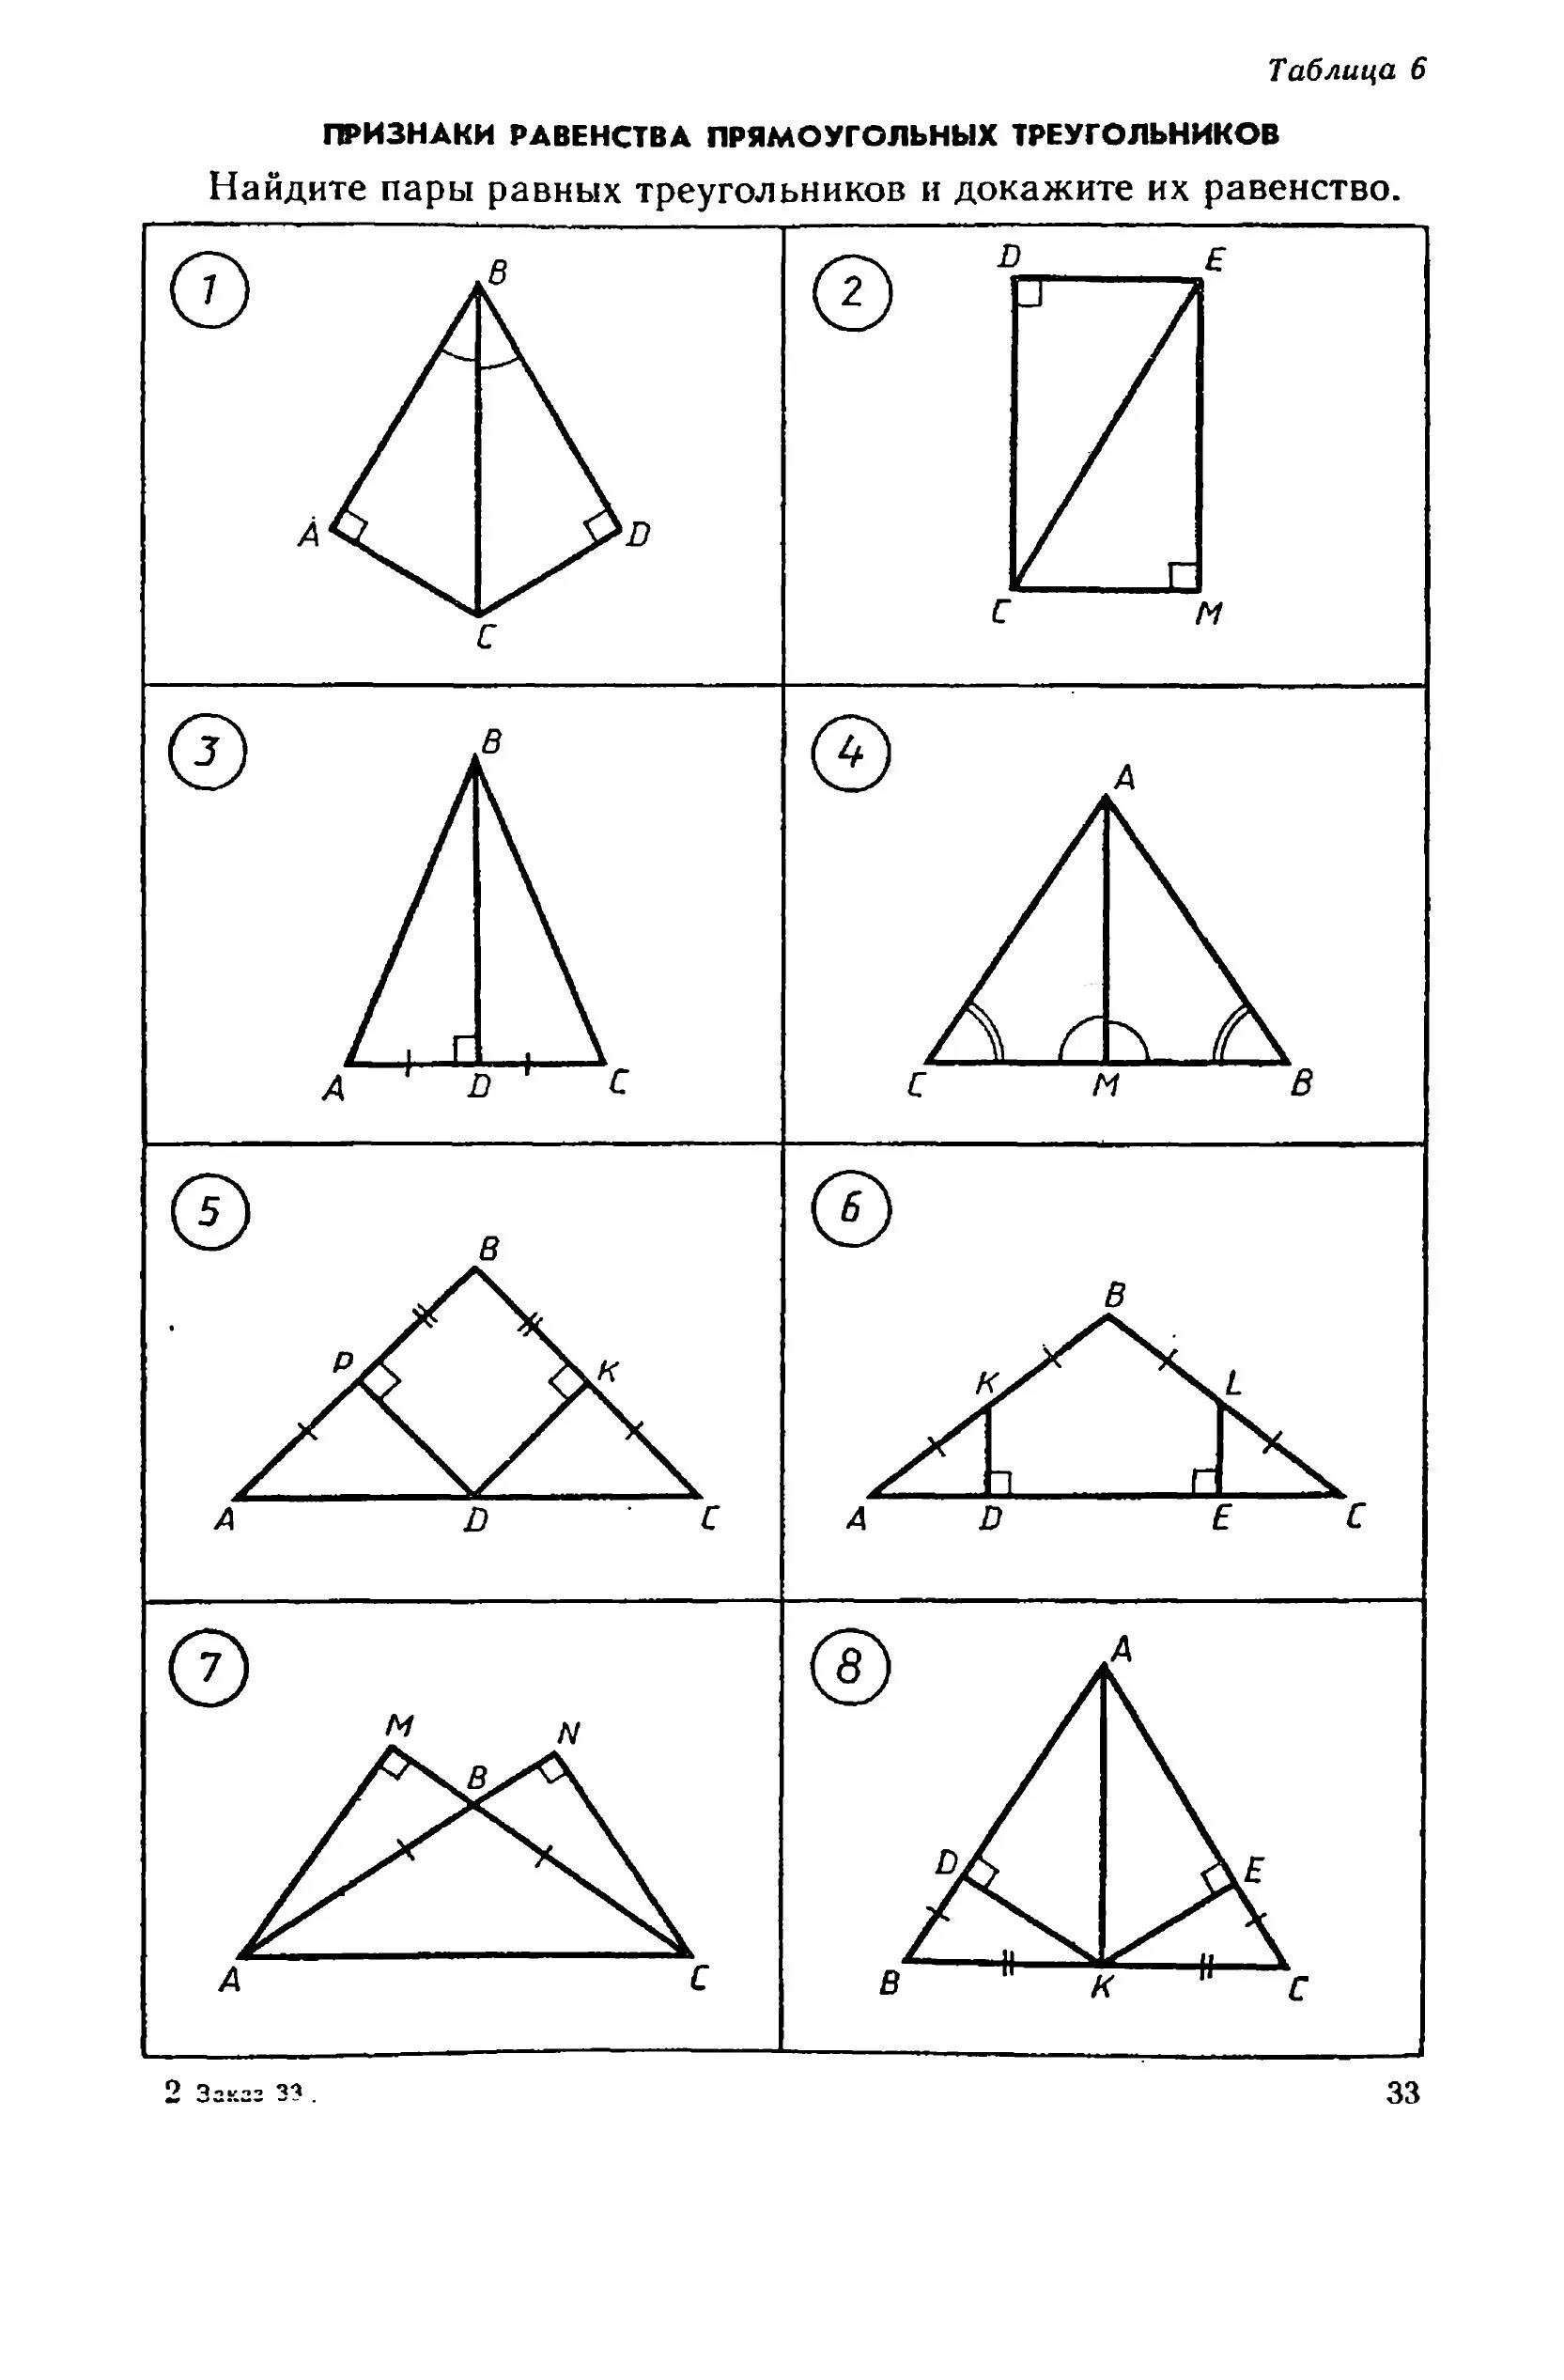 Решение задач на равенство прямоугольных треугольников. Признаки прямоугольных треугольников задачи на готовых чертежах. Признаки равенства прямоугольных треугольников по готовым чертежам. Признаки равенства прямоугольных треугольников на готовых чертежах. Признаки равенства прямоугольных треугольников чертеж.